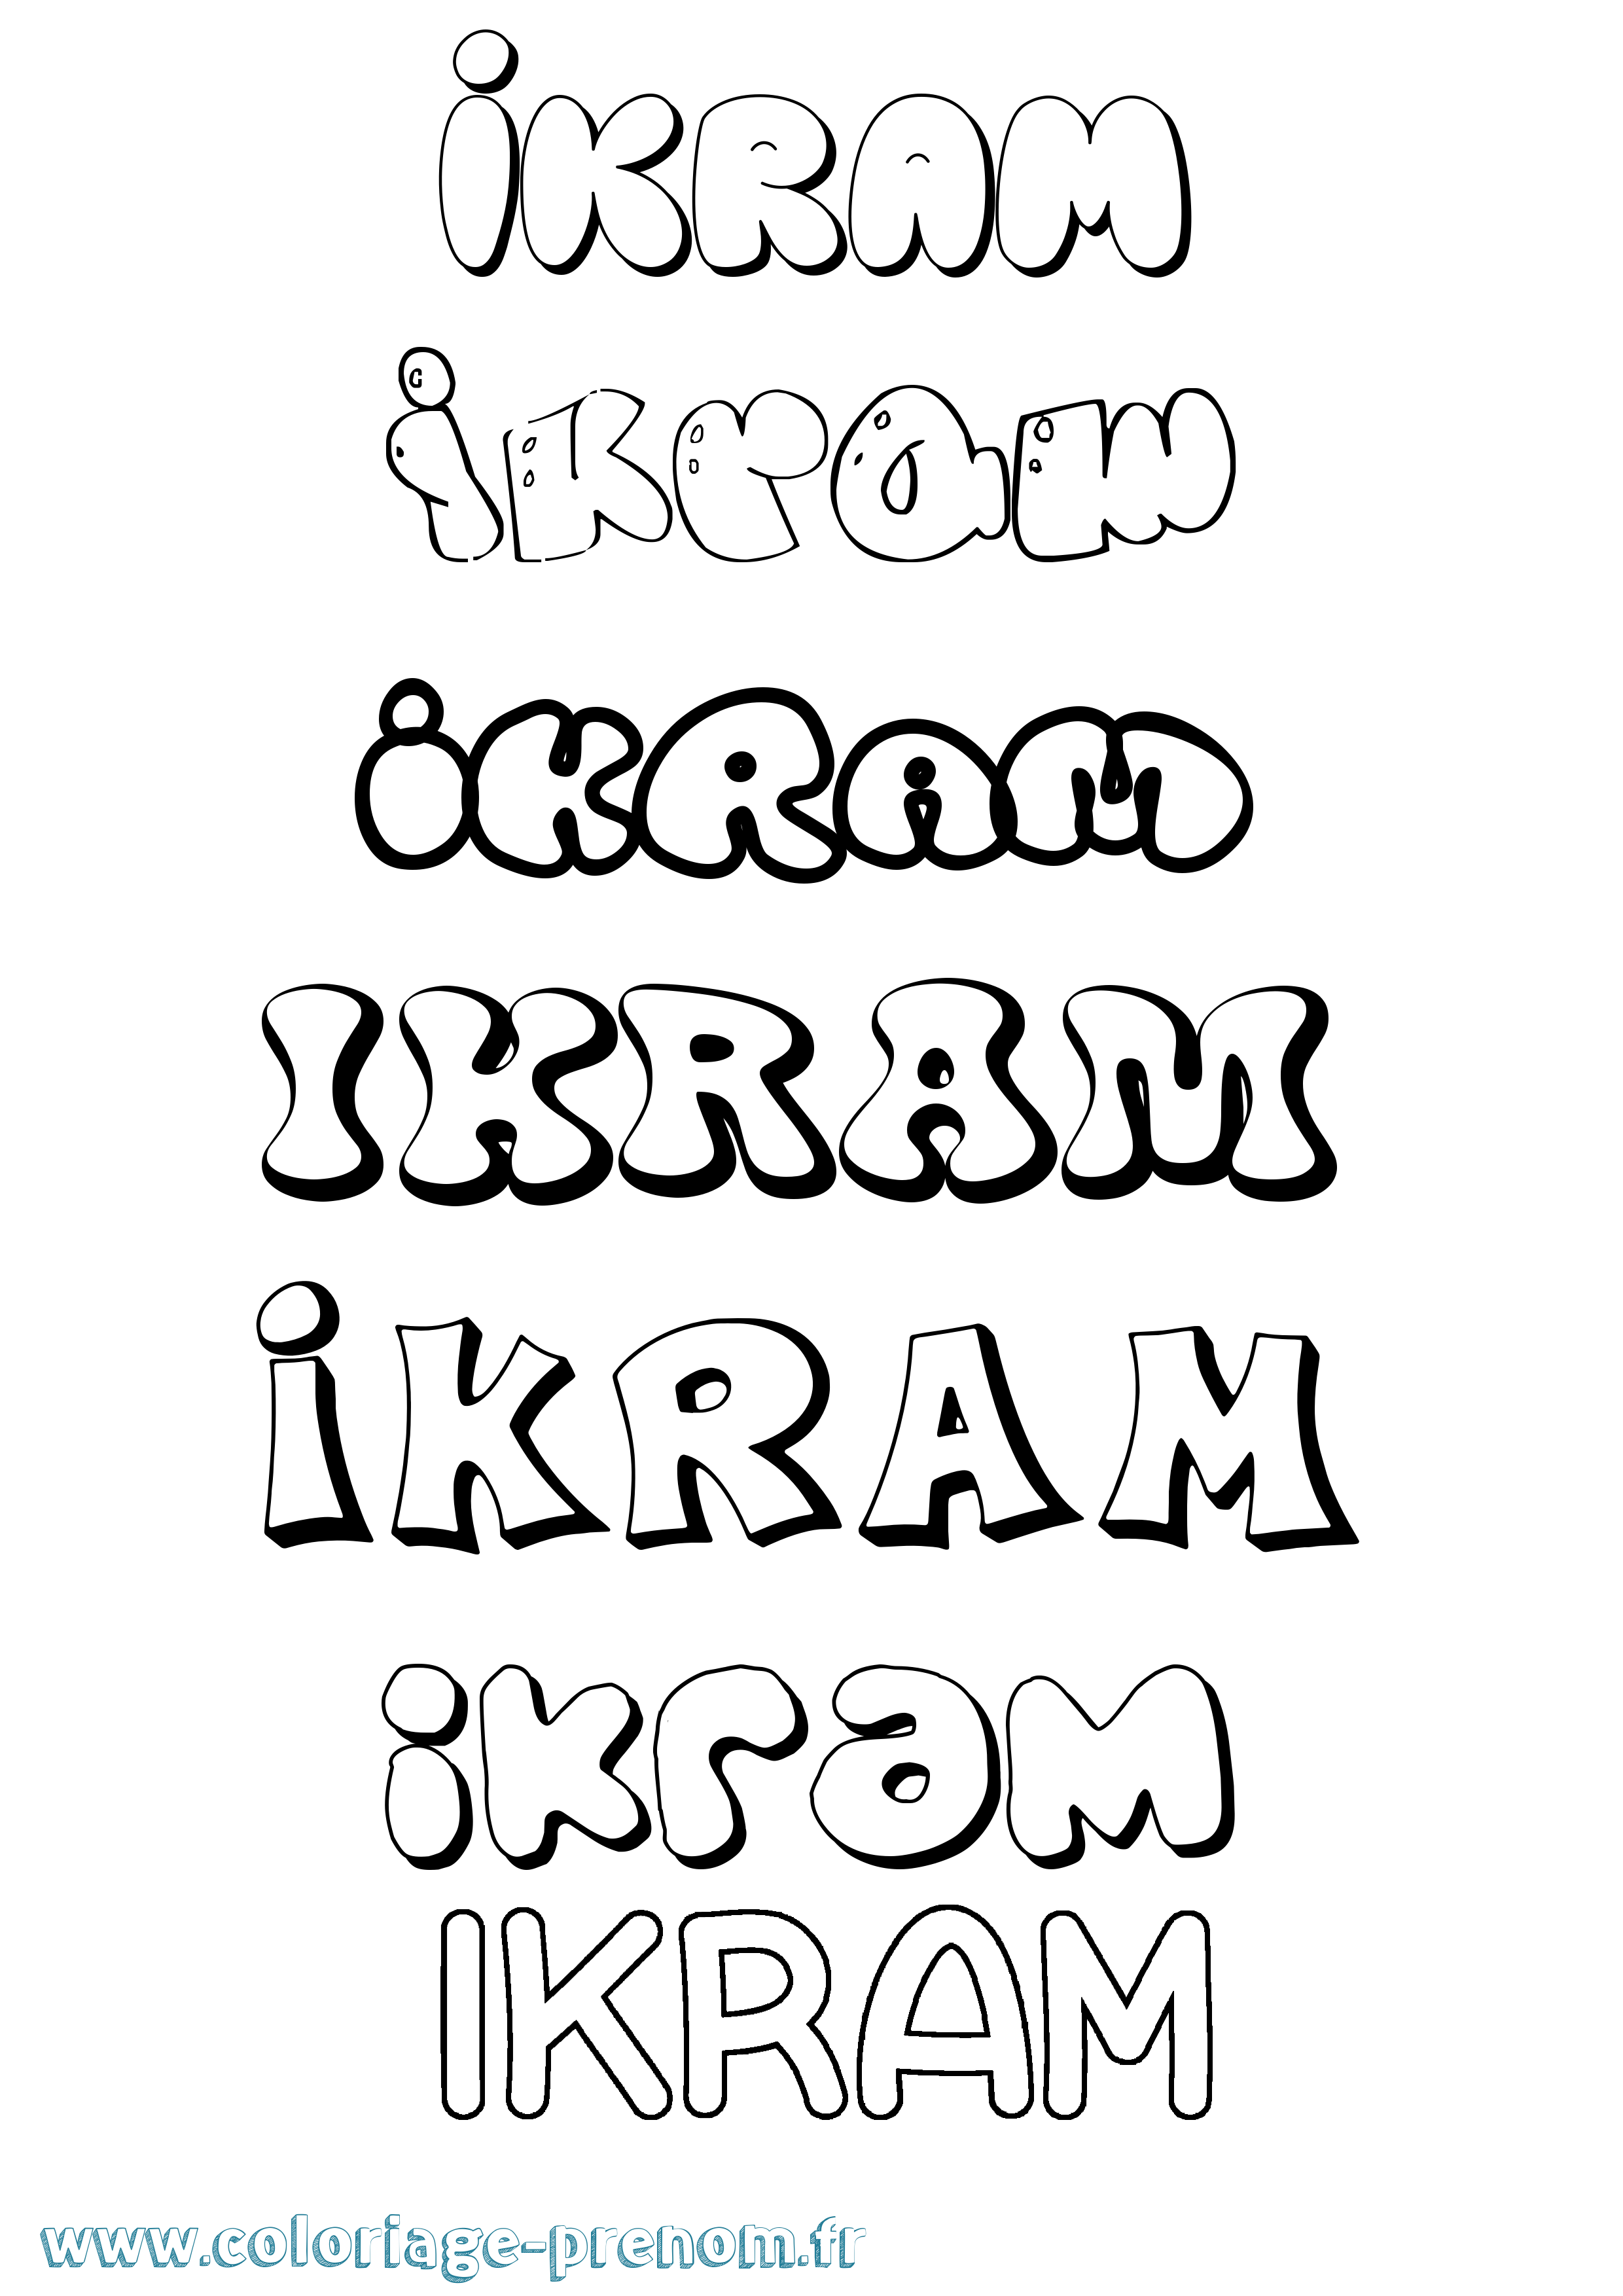 Coloriage prénom Ikram Bubble